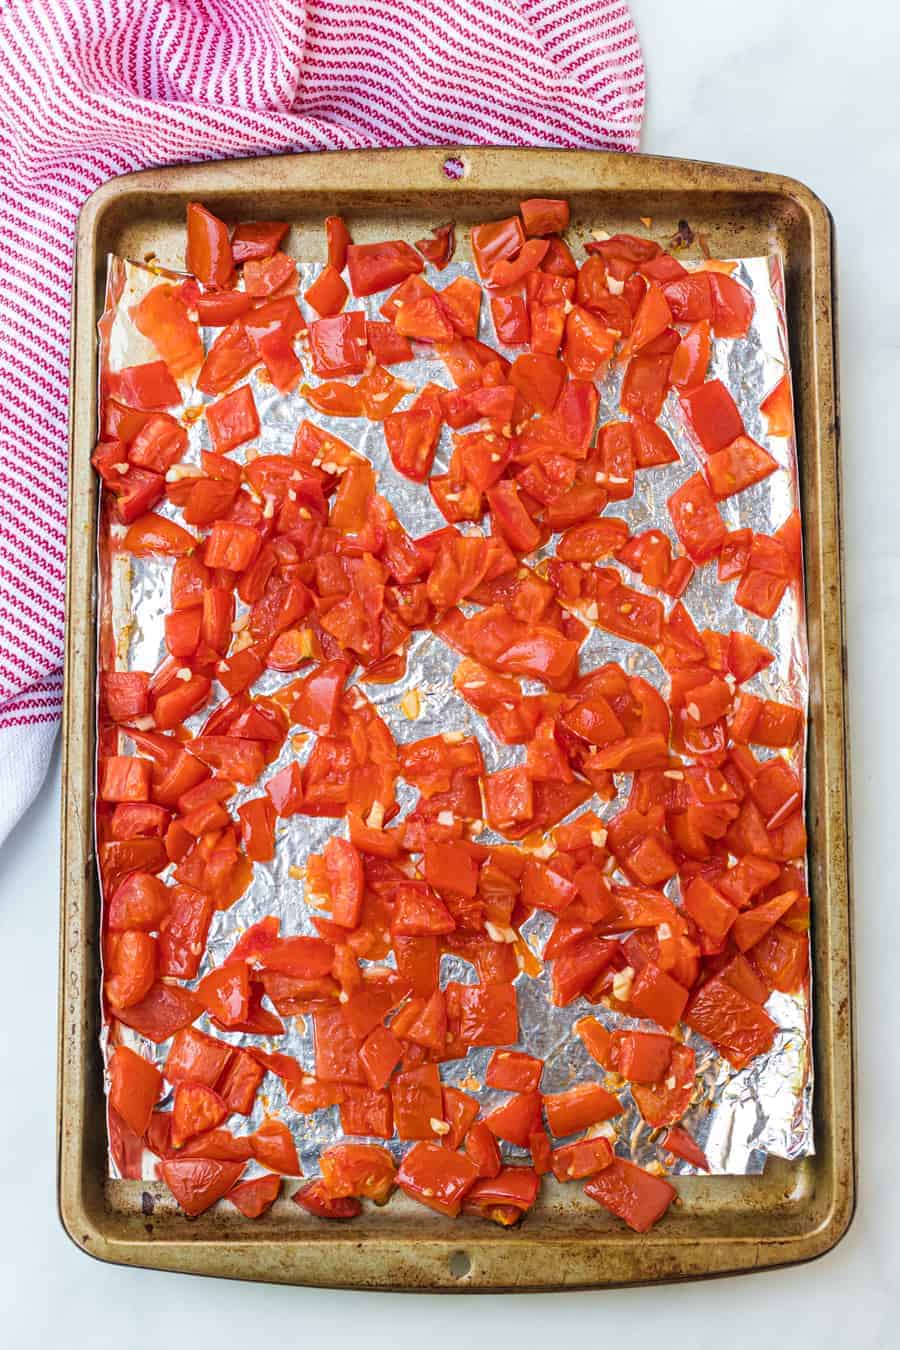 roasted tomato chunks on a baking dish.